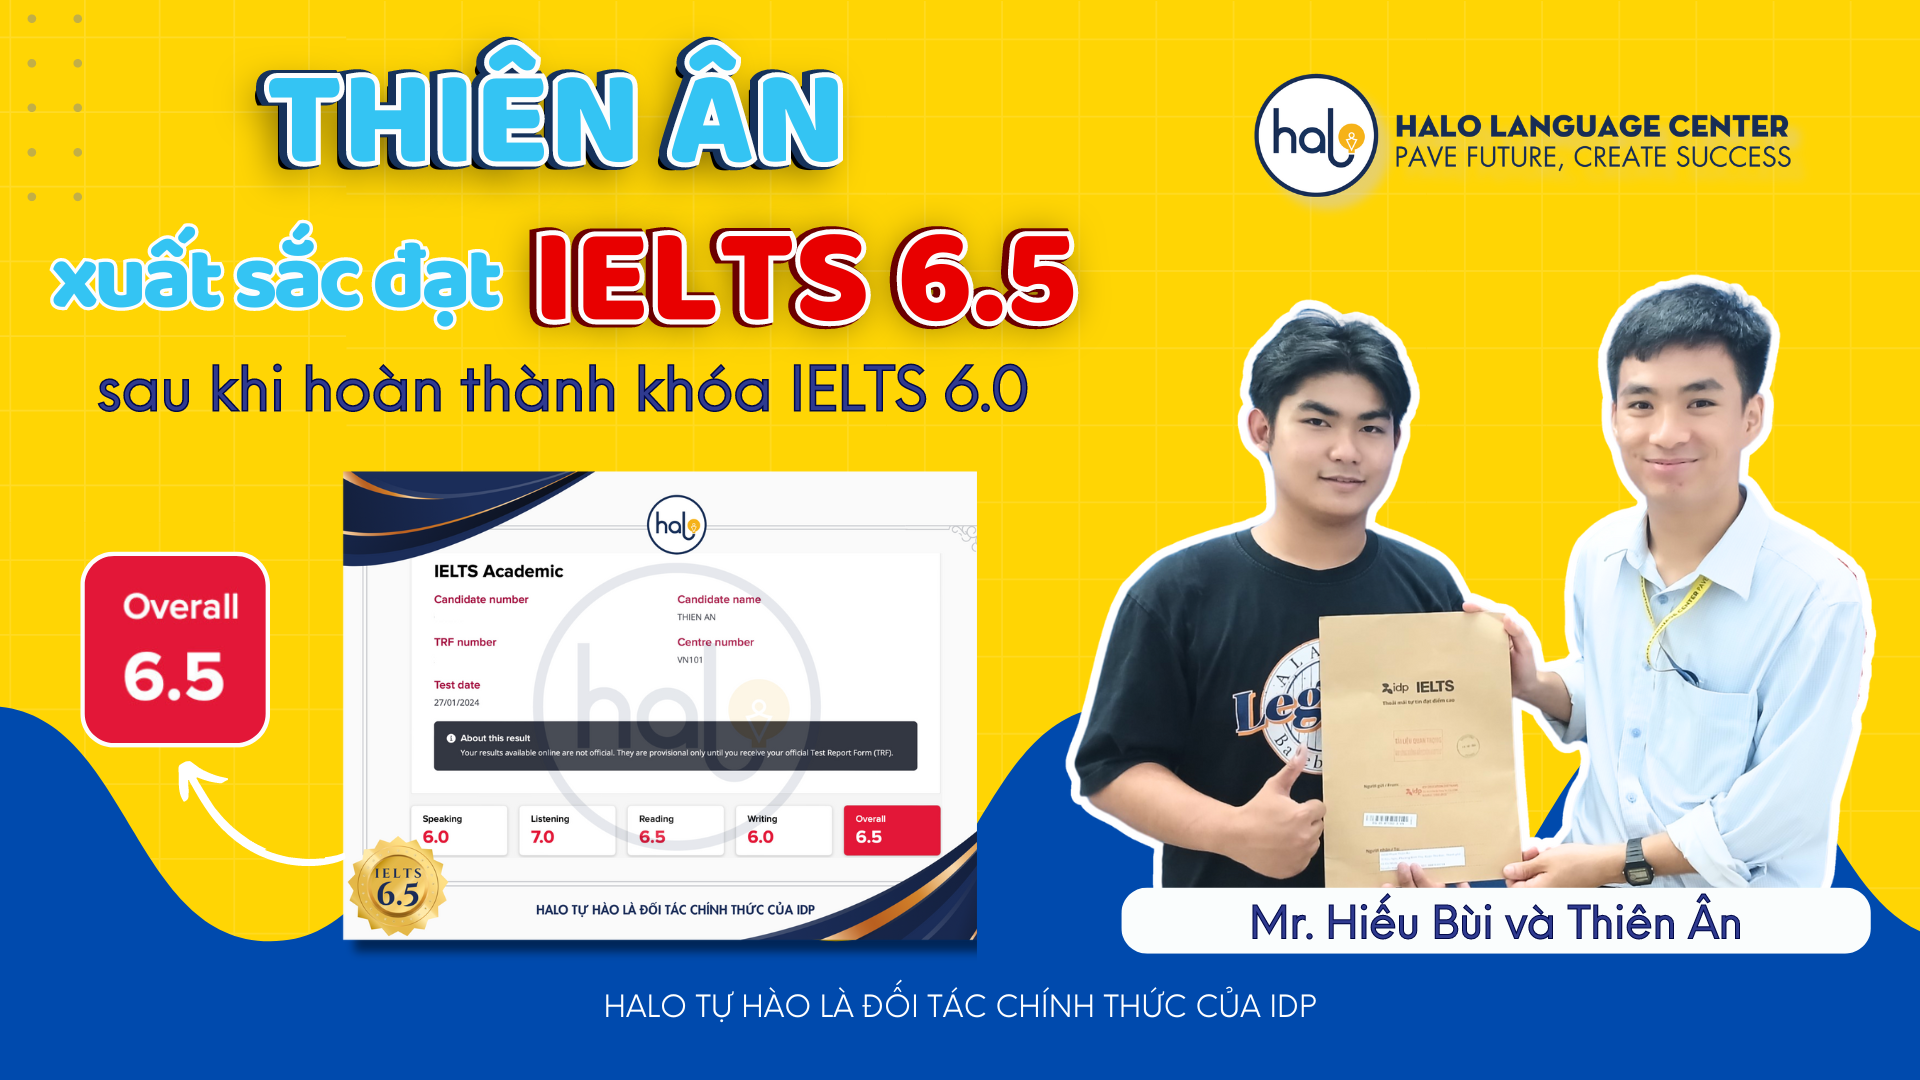 Thiên Ân đạt IELTS 6.5 tại Halo Language Center